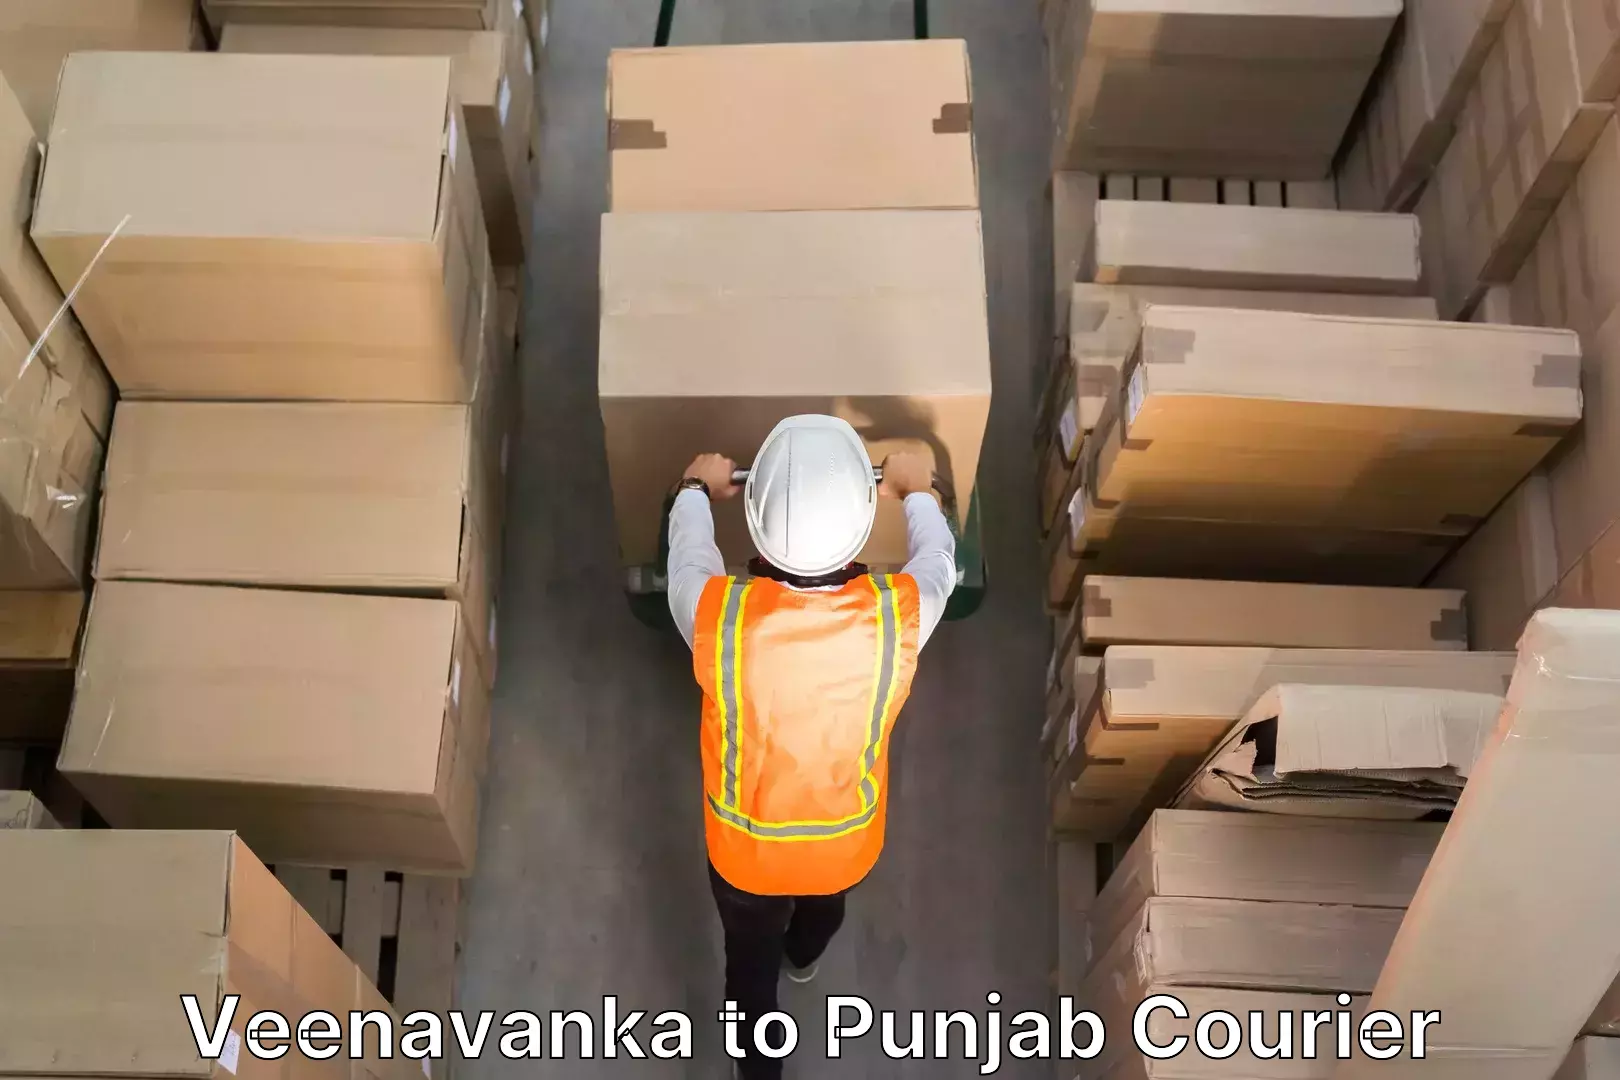 Skilled furniture transport Veenavanka to Punjab